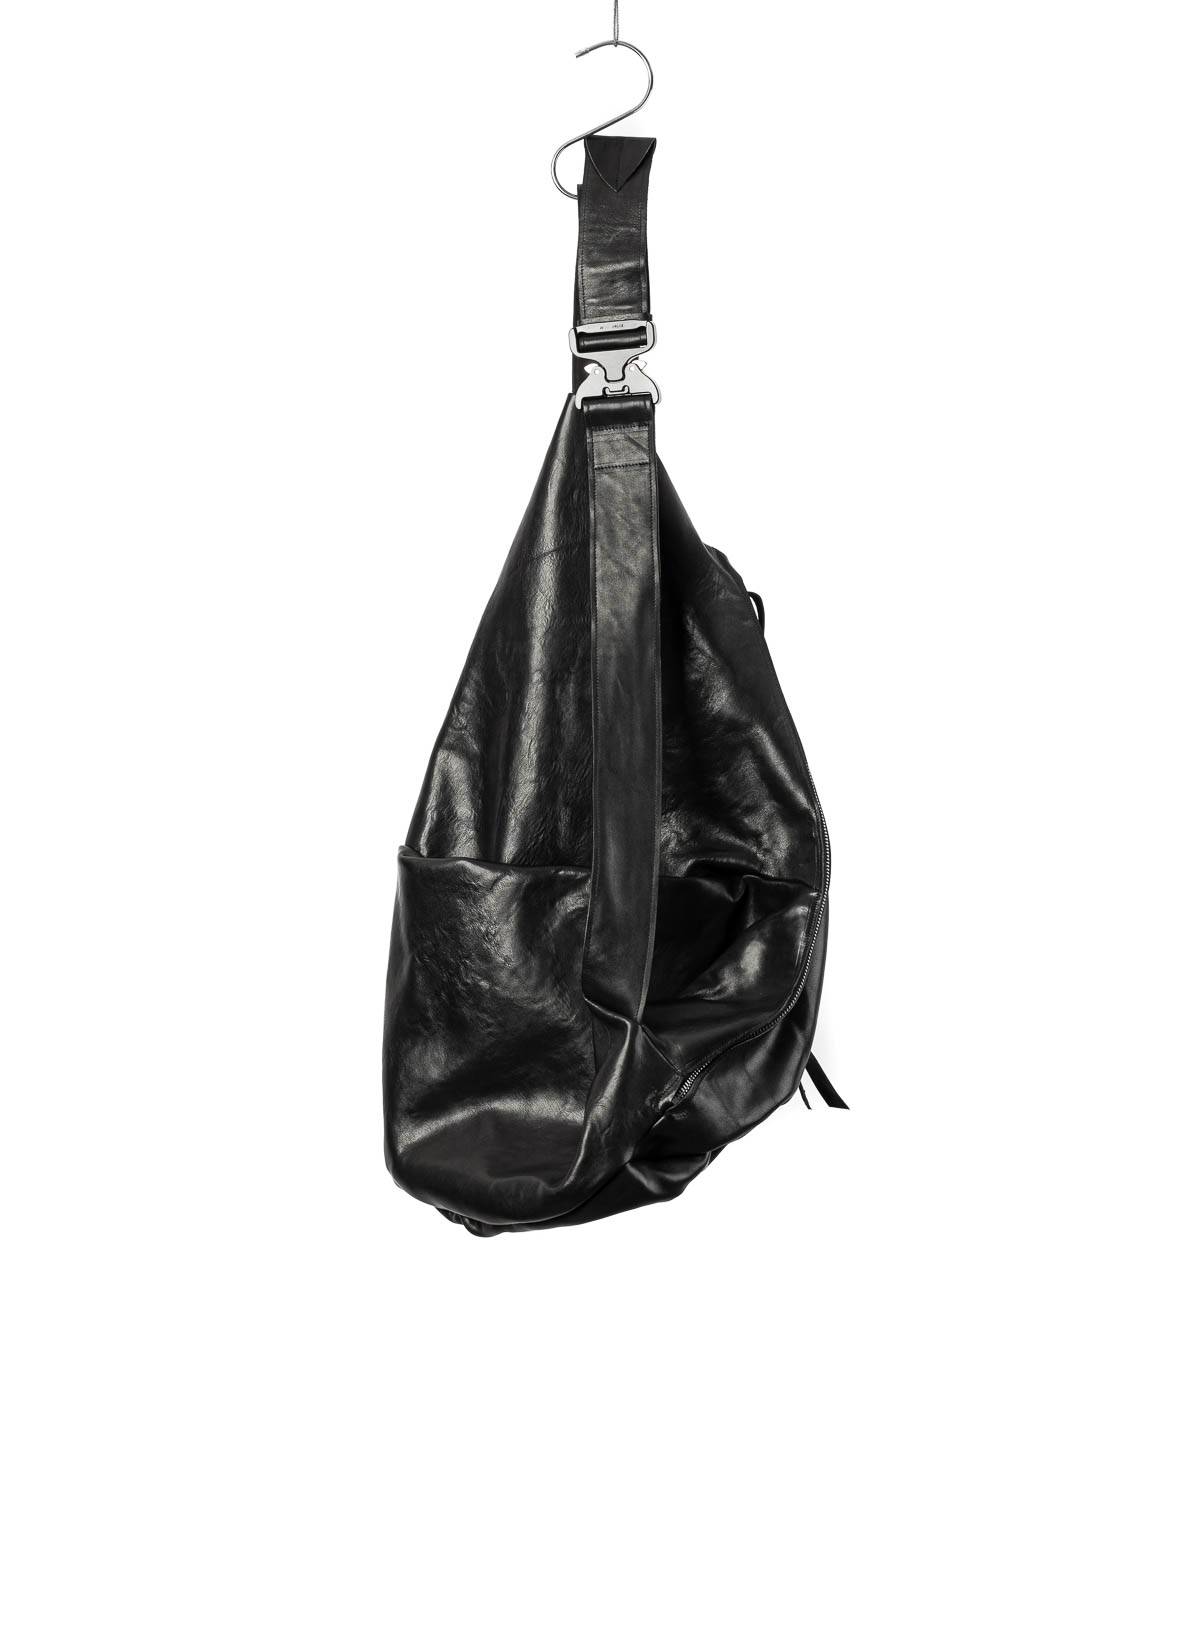 hide-m | LEON EMANUEL Bag XL, leather Dealer black BLANCK horse